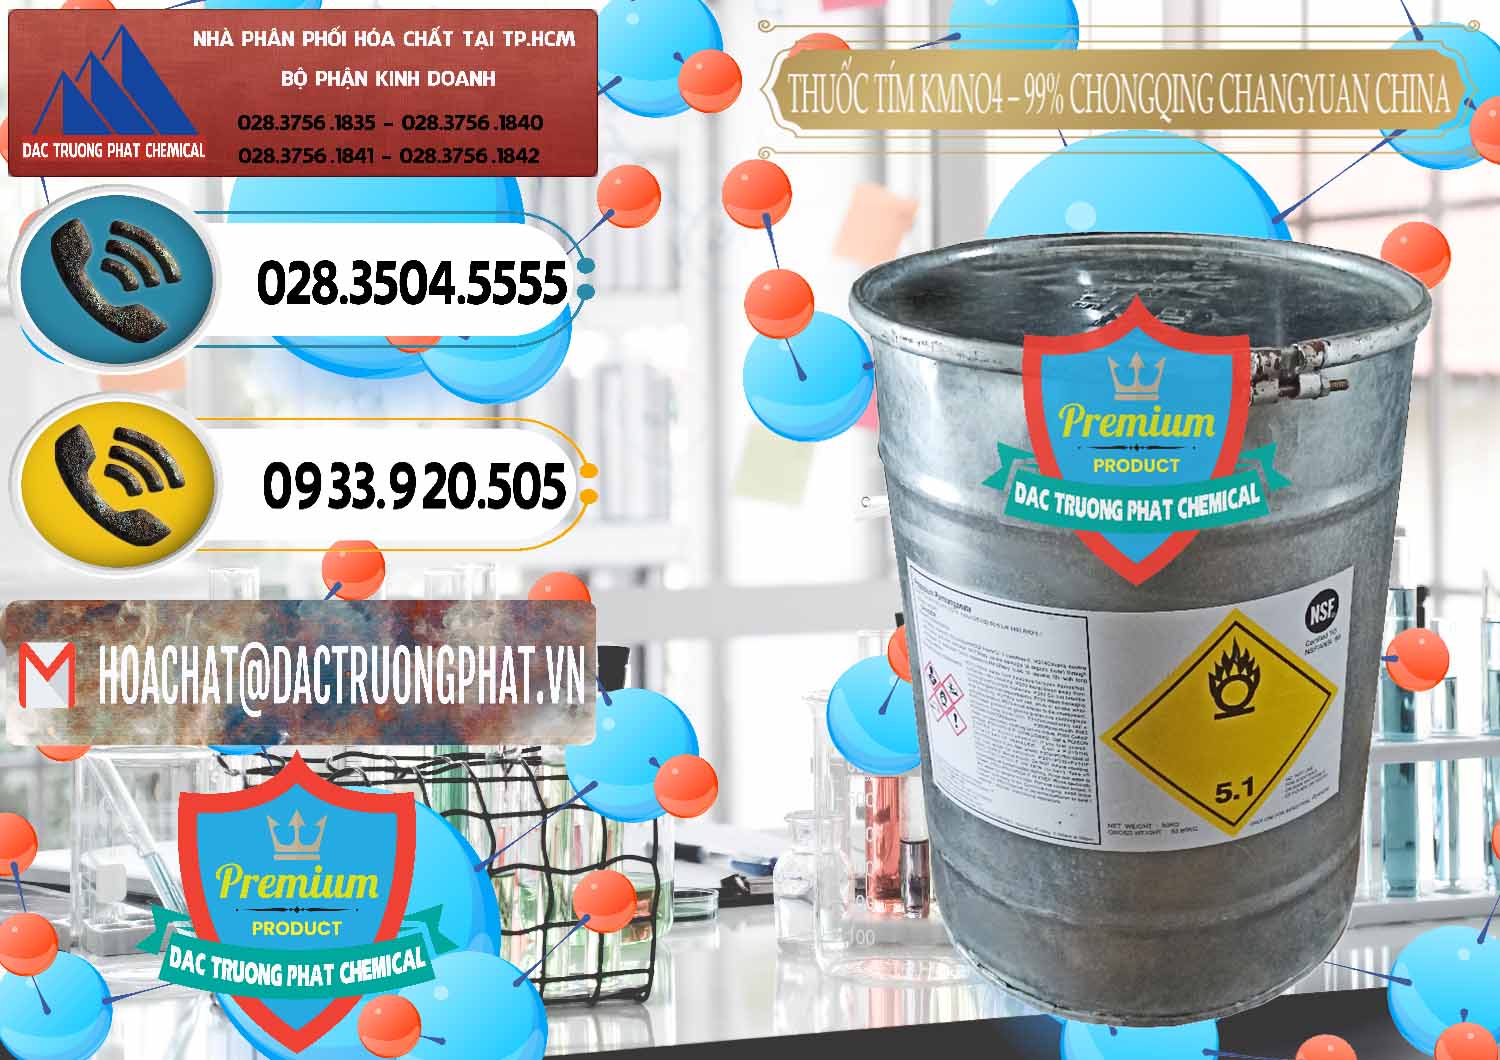 Chuyên bán _ cung cấp Thuốc Tím – KMNO4 99% Chongqing Changyuan Trung Quốc China - 0166 - Công ty chuyên cung ứng & phân phối hóa chất tại TP.HCM - hoachatdetnhuom.vn